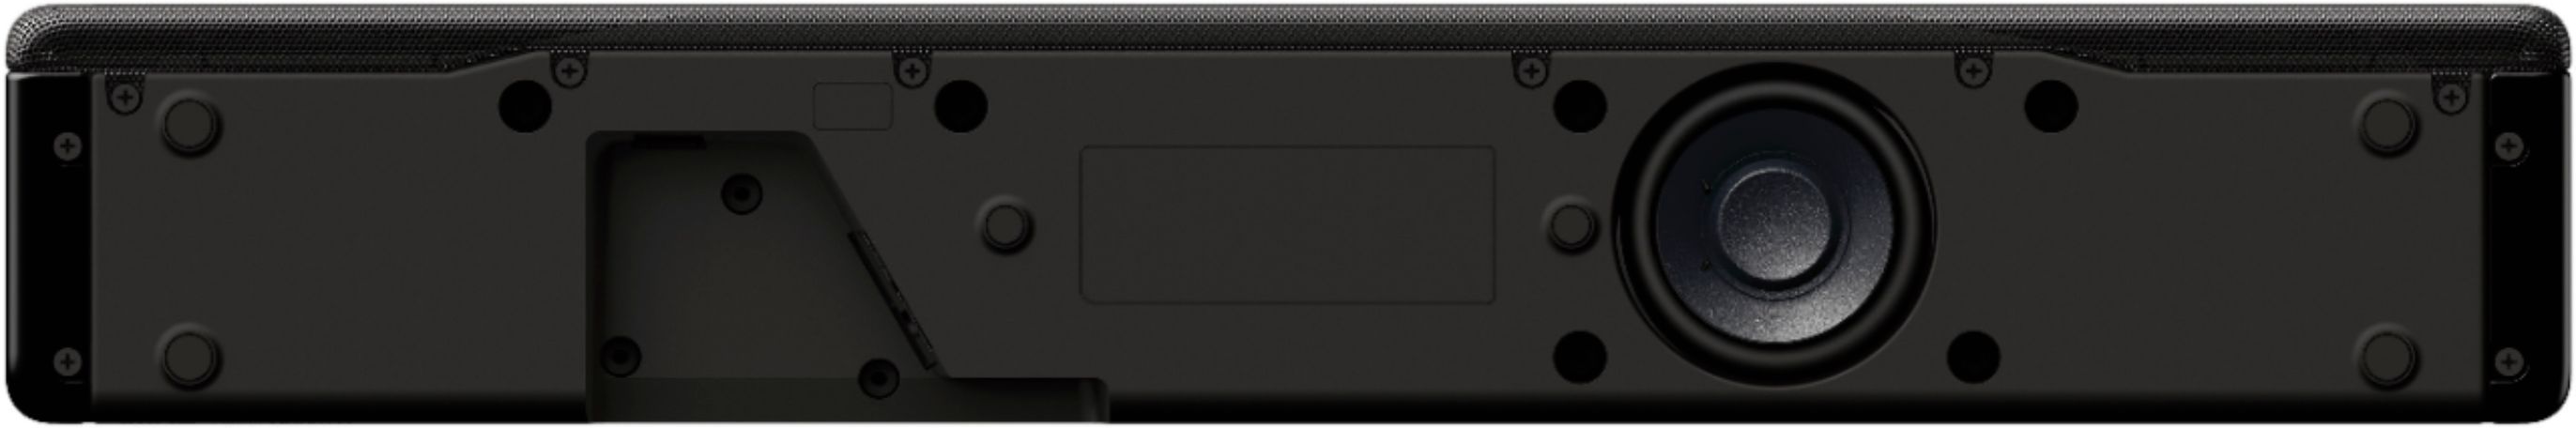 オーディオ機器 スピーカー Sony 2.1-Channel Soundbar with Built-In Wireless Subwoofer Black 